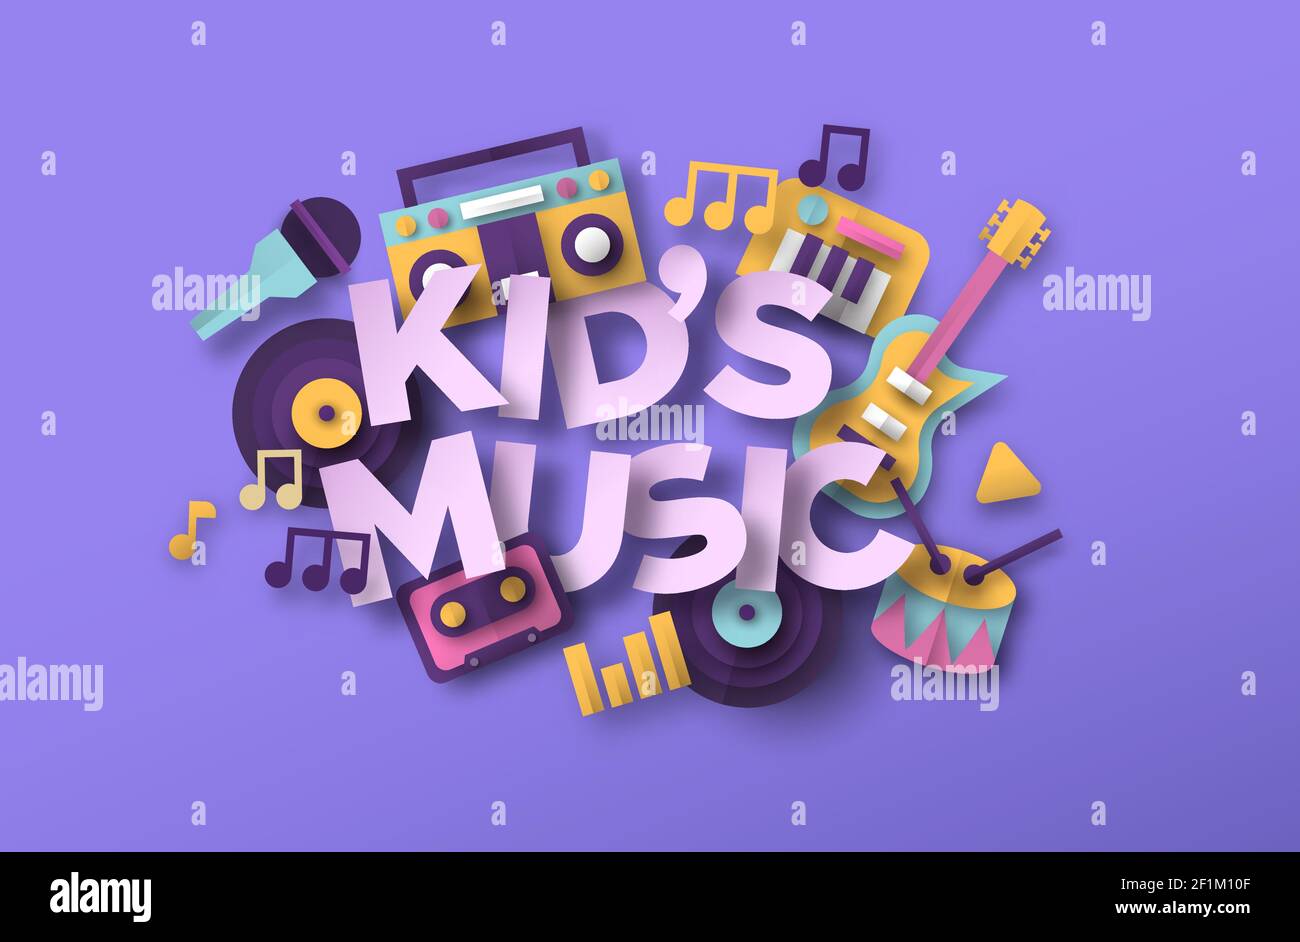 Kinder Musik Stil Illustration mit 3D Papier geschnitten Musikspielzeug Ikonen. Schulband, Tonpädagogik oder Spaß Kinder Konzert Veranstaltungskonzept. Inklusive Mikro Stock Vektor